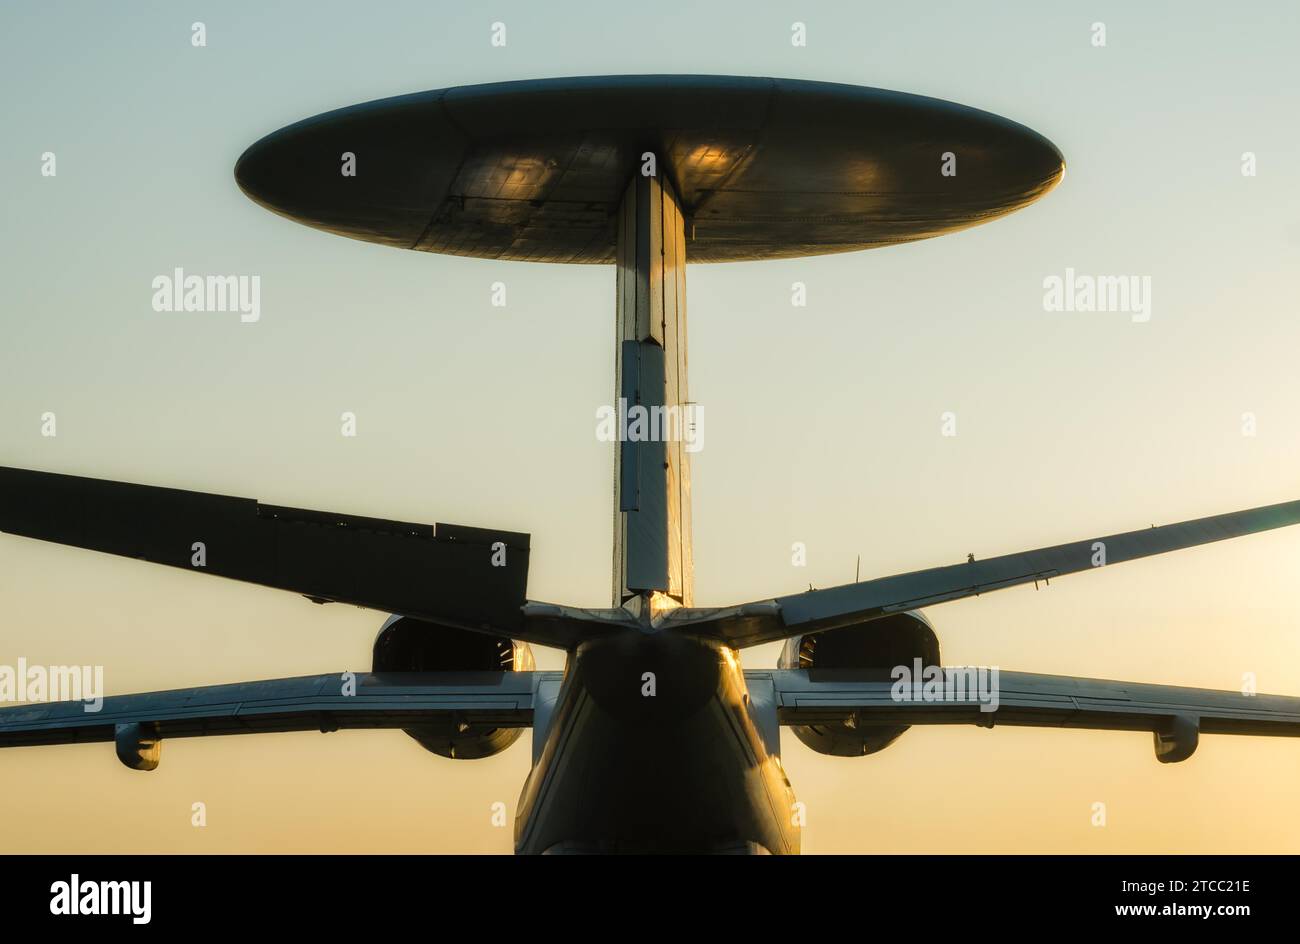 Silhouette avion de reconnaissance de l'armée russe grand avion avec une antenne ronde dans l'isolement Banque D'Images